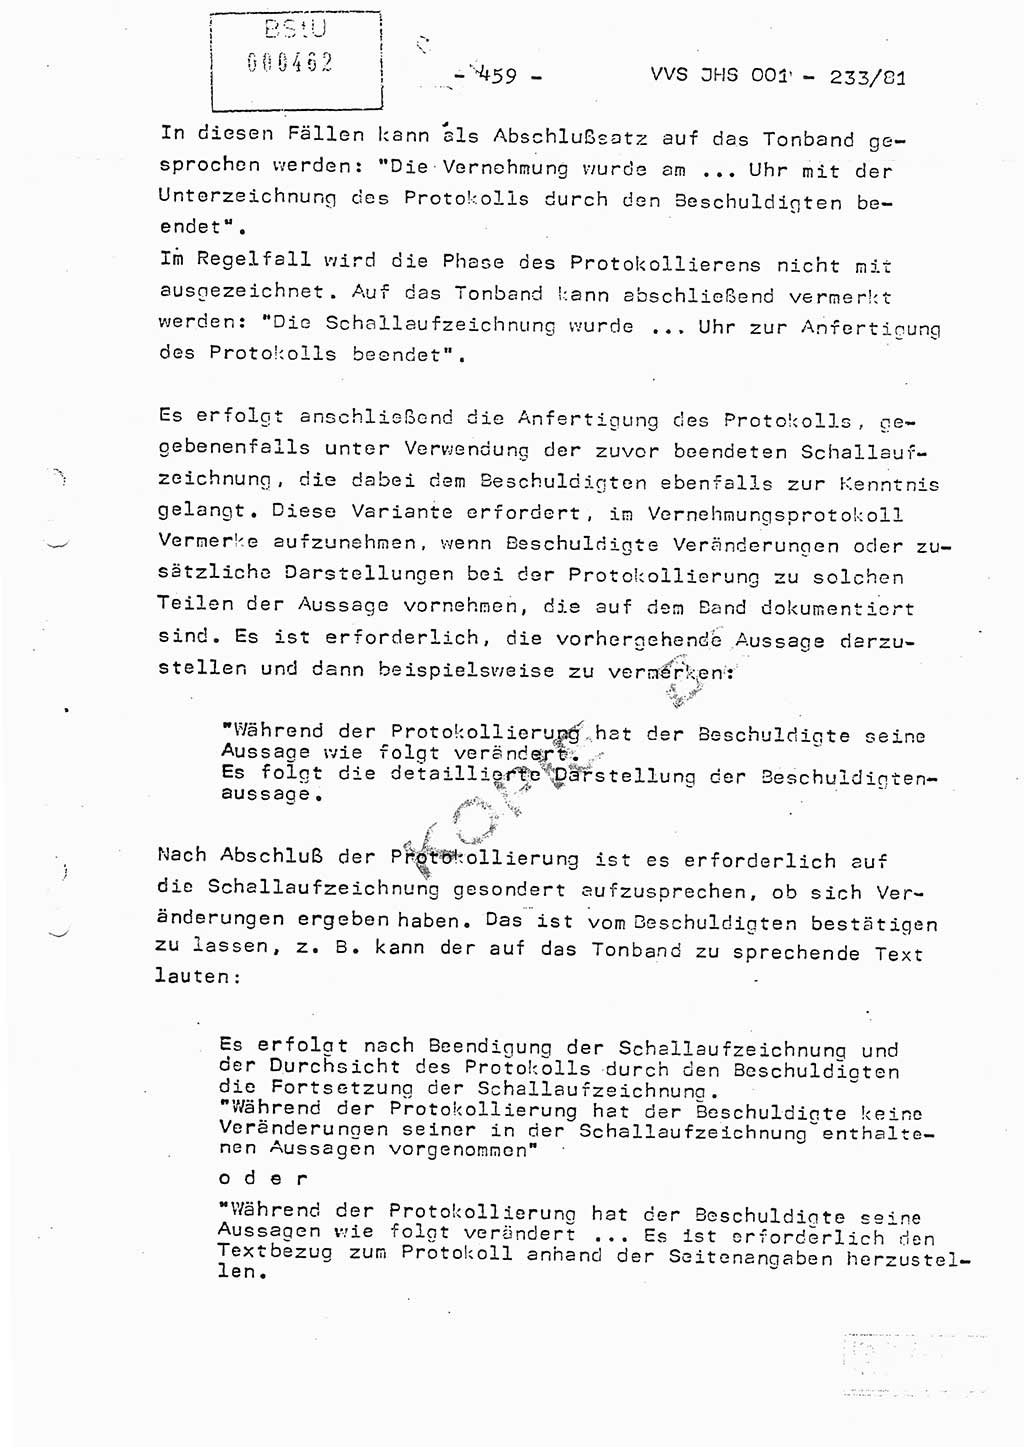 Dissertation Oberstleutnant Horst Zank (JHS), Oberstleutnant Dr. Karl-Heinz Knoblauch (JHS), Oberstleutnant Gustav-Adolf Kowalewski (HA Ⅸ), Oberstleutnant Wolfgang Plötner (HA Ⅸ), Ministerium für Staatssicherheit (MfS) [Deutsche Demokratische Republik (DDR)], Juristische Hochschule (JHS), Vertrauliche Verschlußsache (VVS) o001-233/81, Potsdam 1981, Blatt 459 (Diss. MfS DDR JHS VVS o001-233/81 1981, Bl. 459)